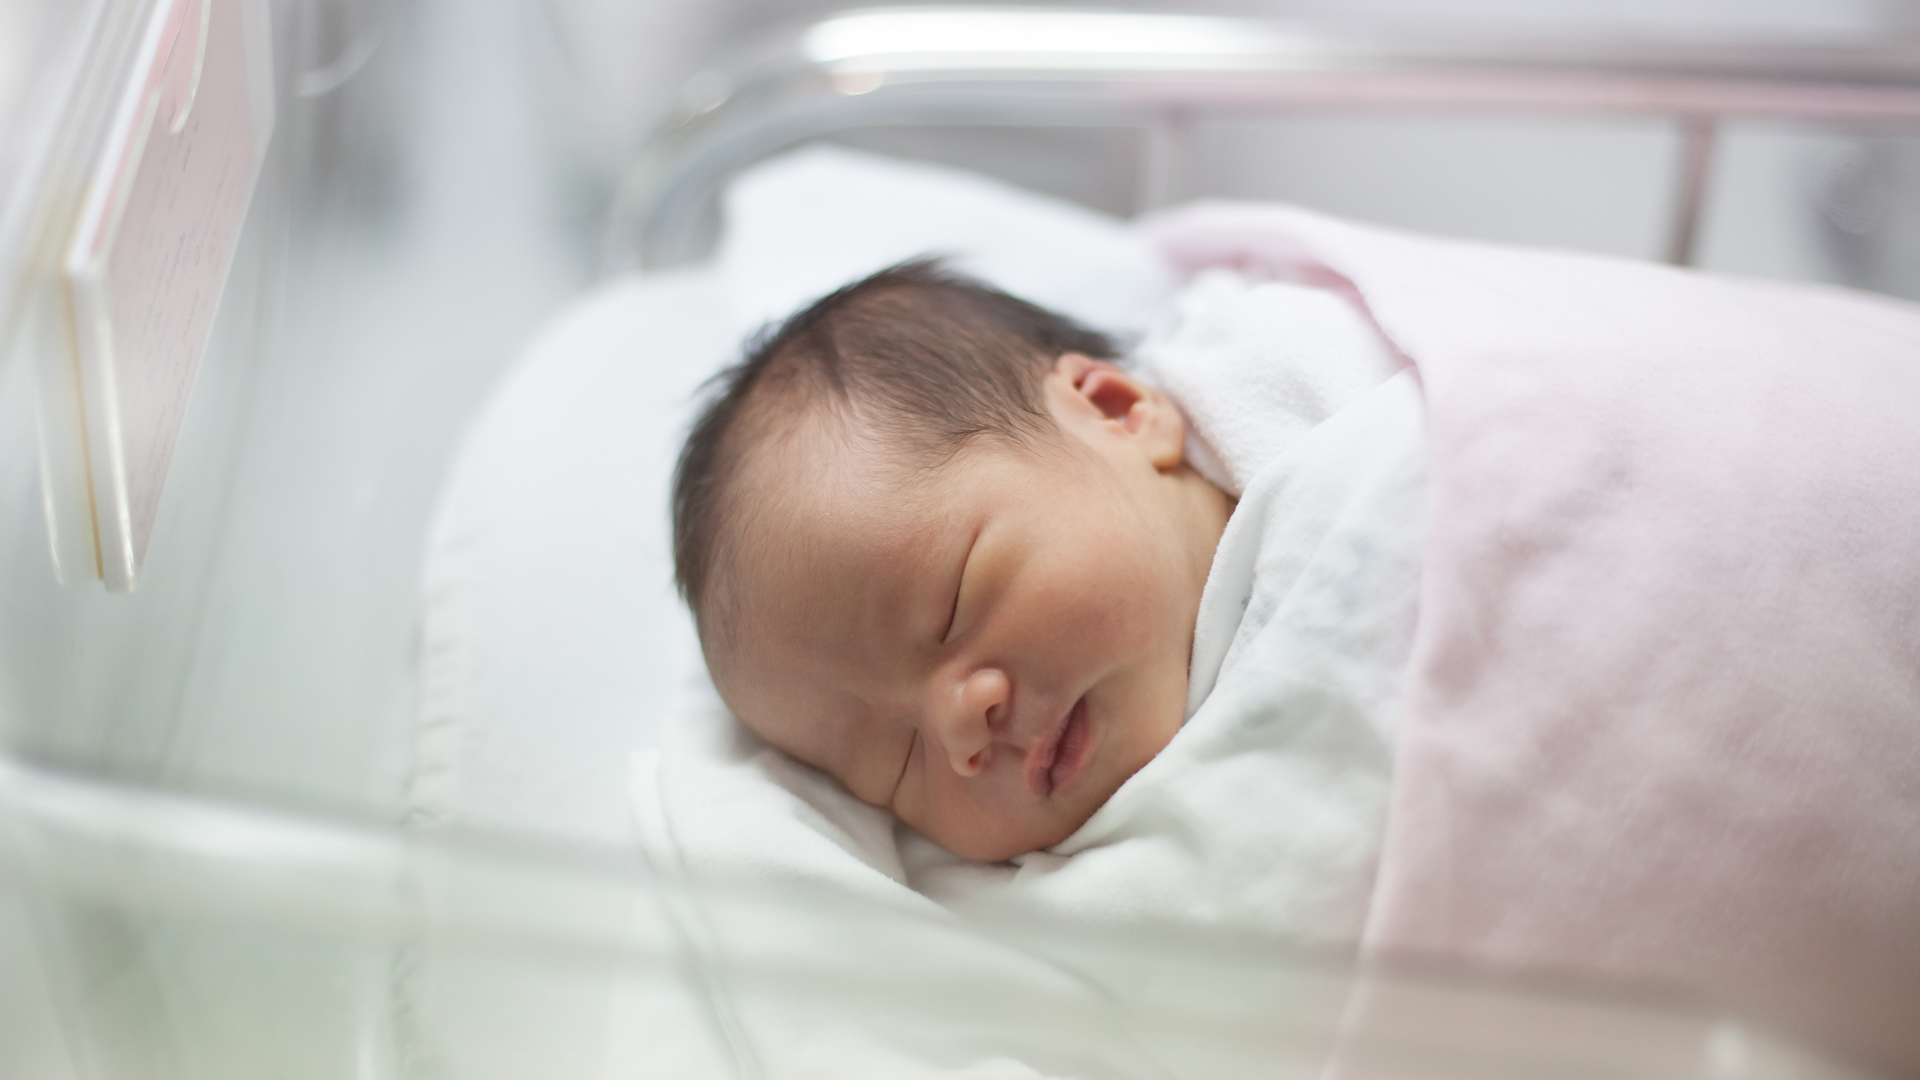 El objetivo del chupete es recopilar información de los recién nacidos sin tener que utilizar métodos invasivos (iStock)